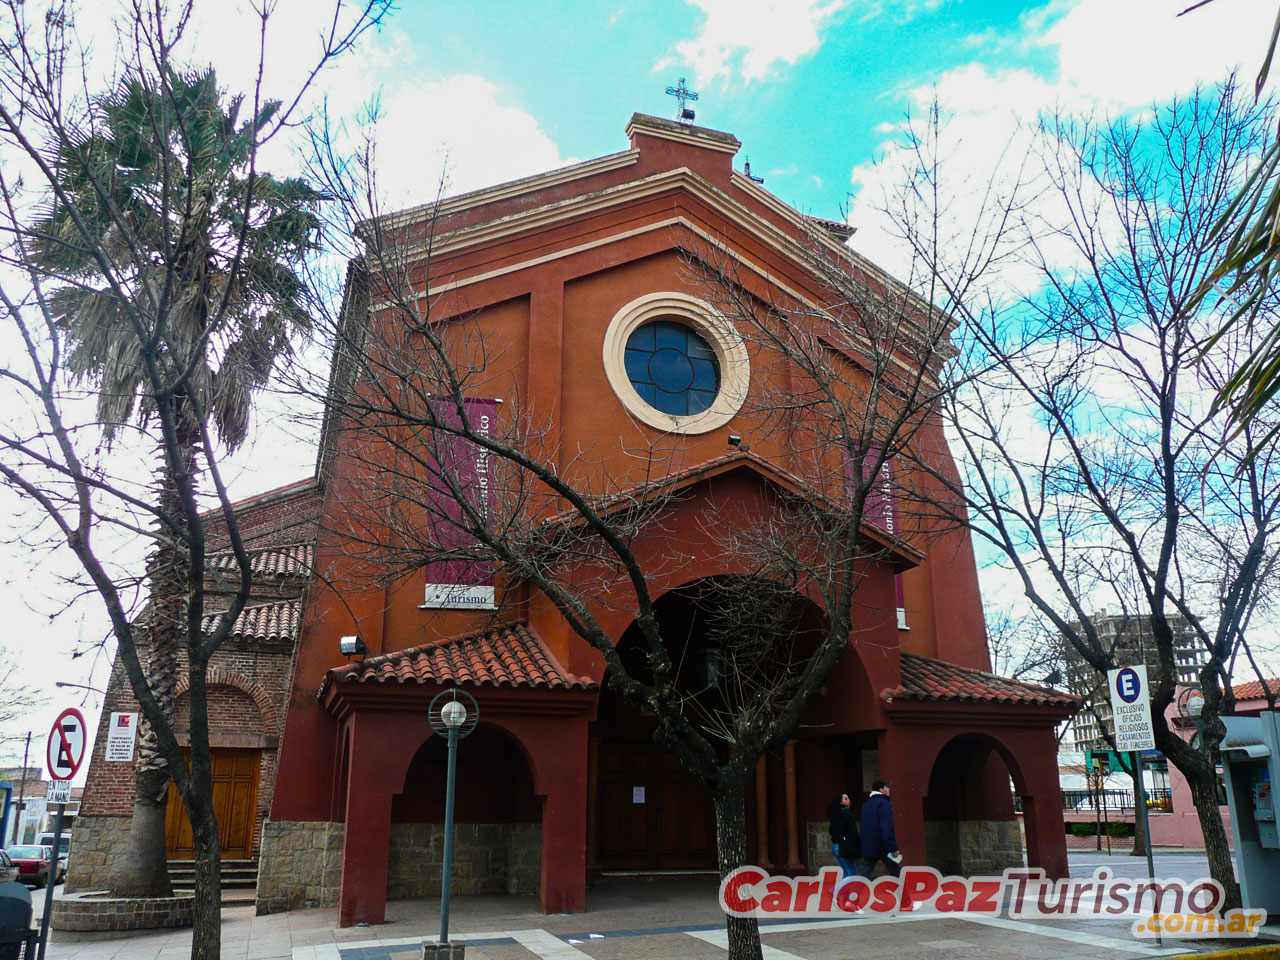 Sitios a Visitar en Carlos Paz